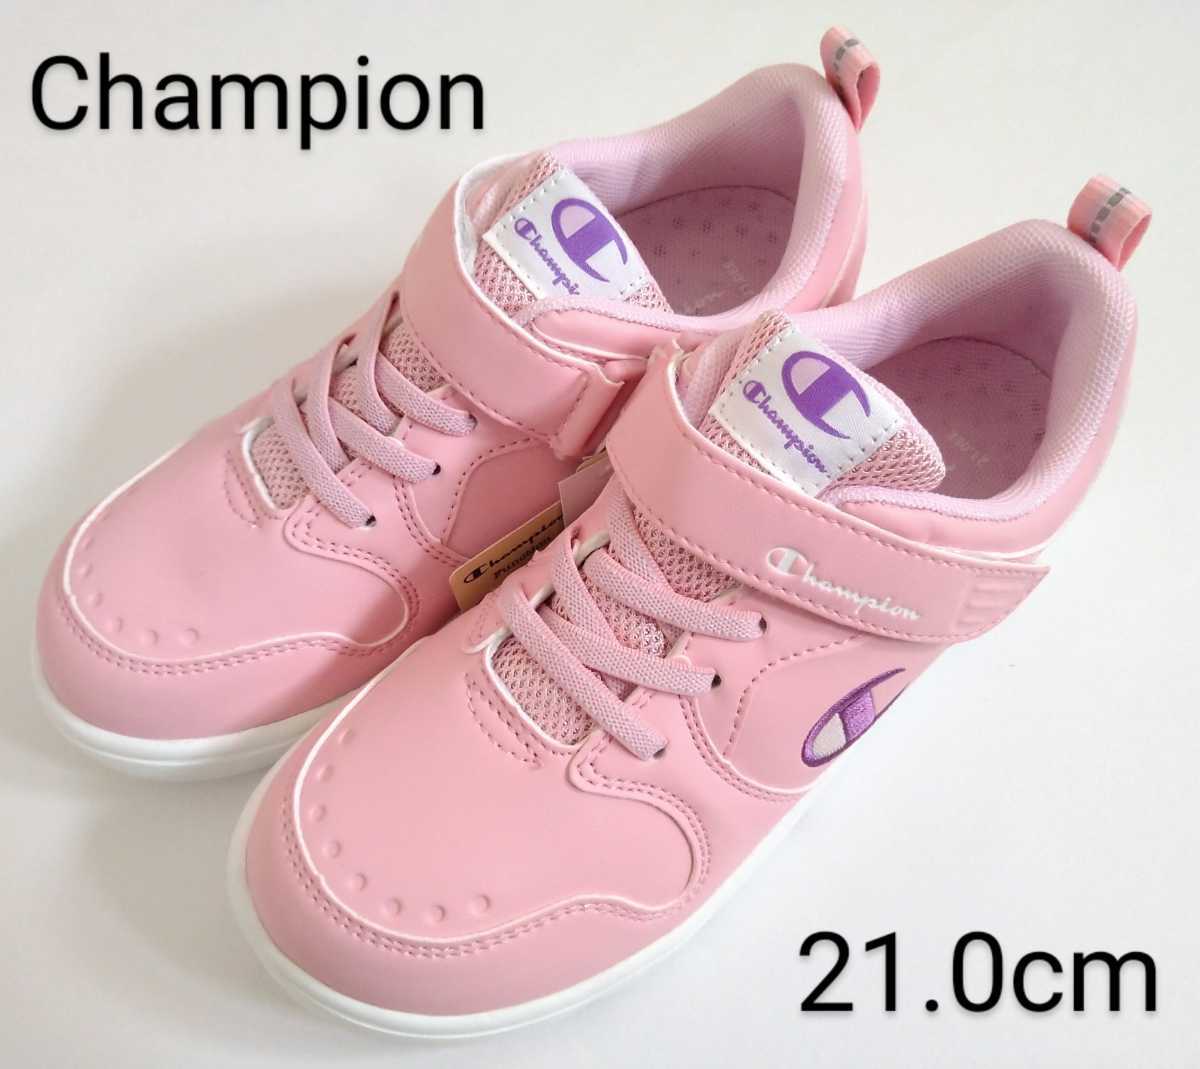  бесплатная доставка *Champion спортивные туфли 21cm розовый Champion Kids обувь 21.0cm ремень модель спортивная обувь девочка антибактериальный дезодорация стелька легкий проект 